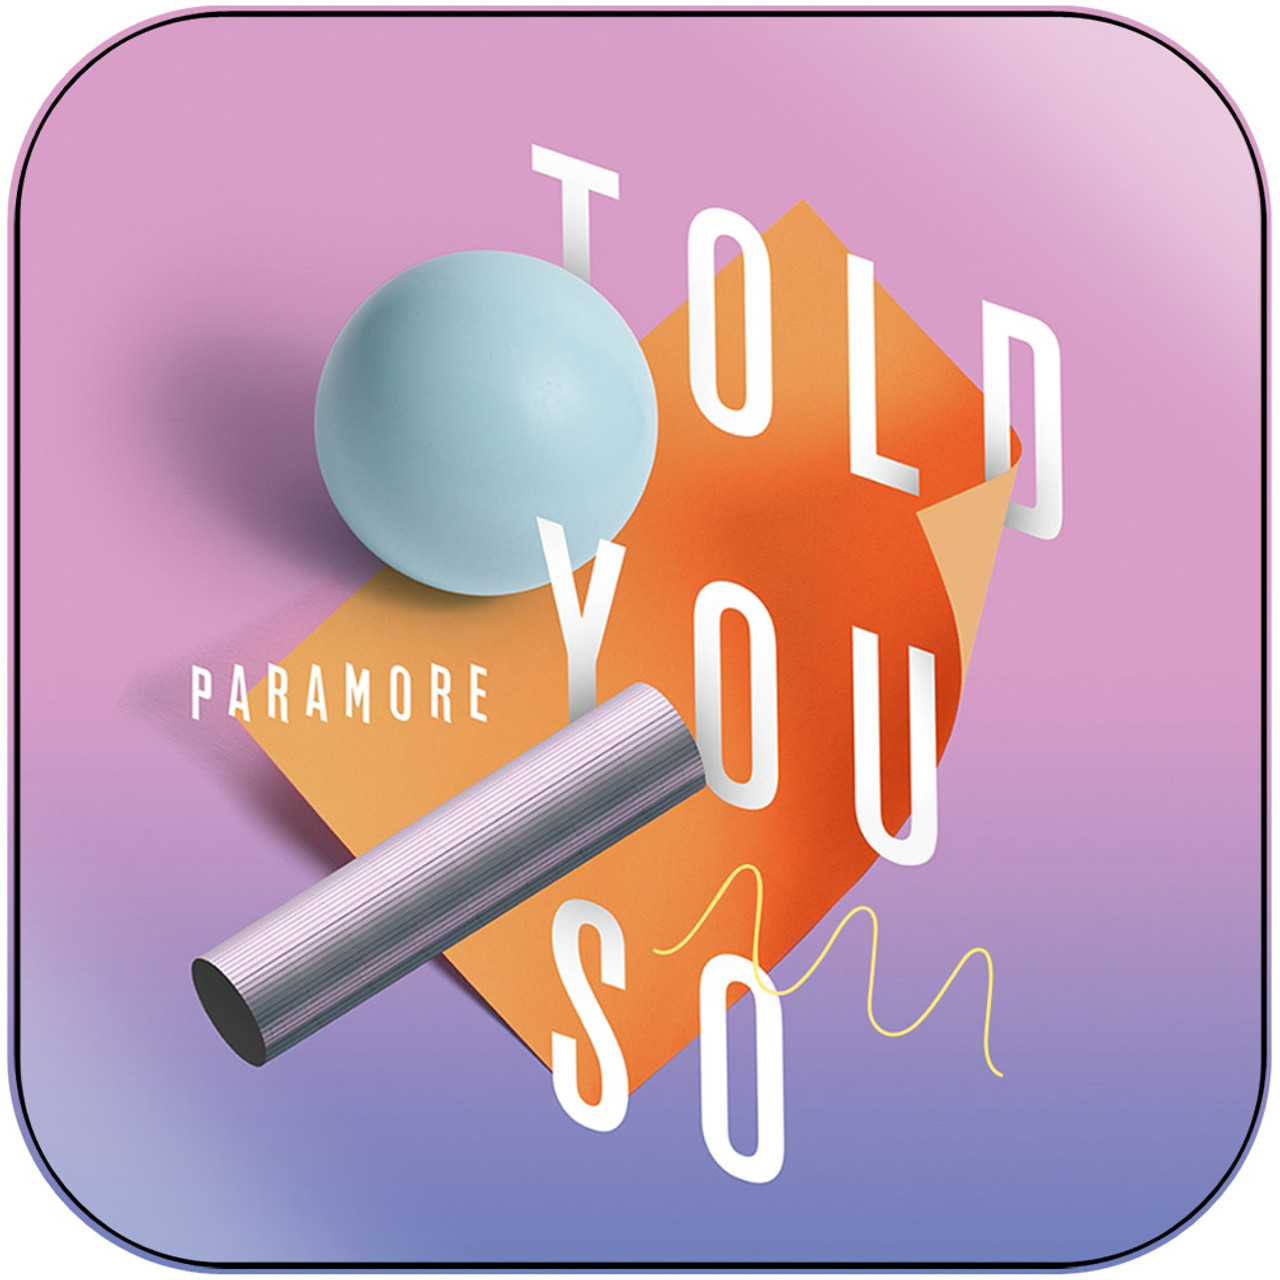 Paramore Riot-1 Album Cover Sticker Album Cover Sticker